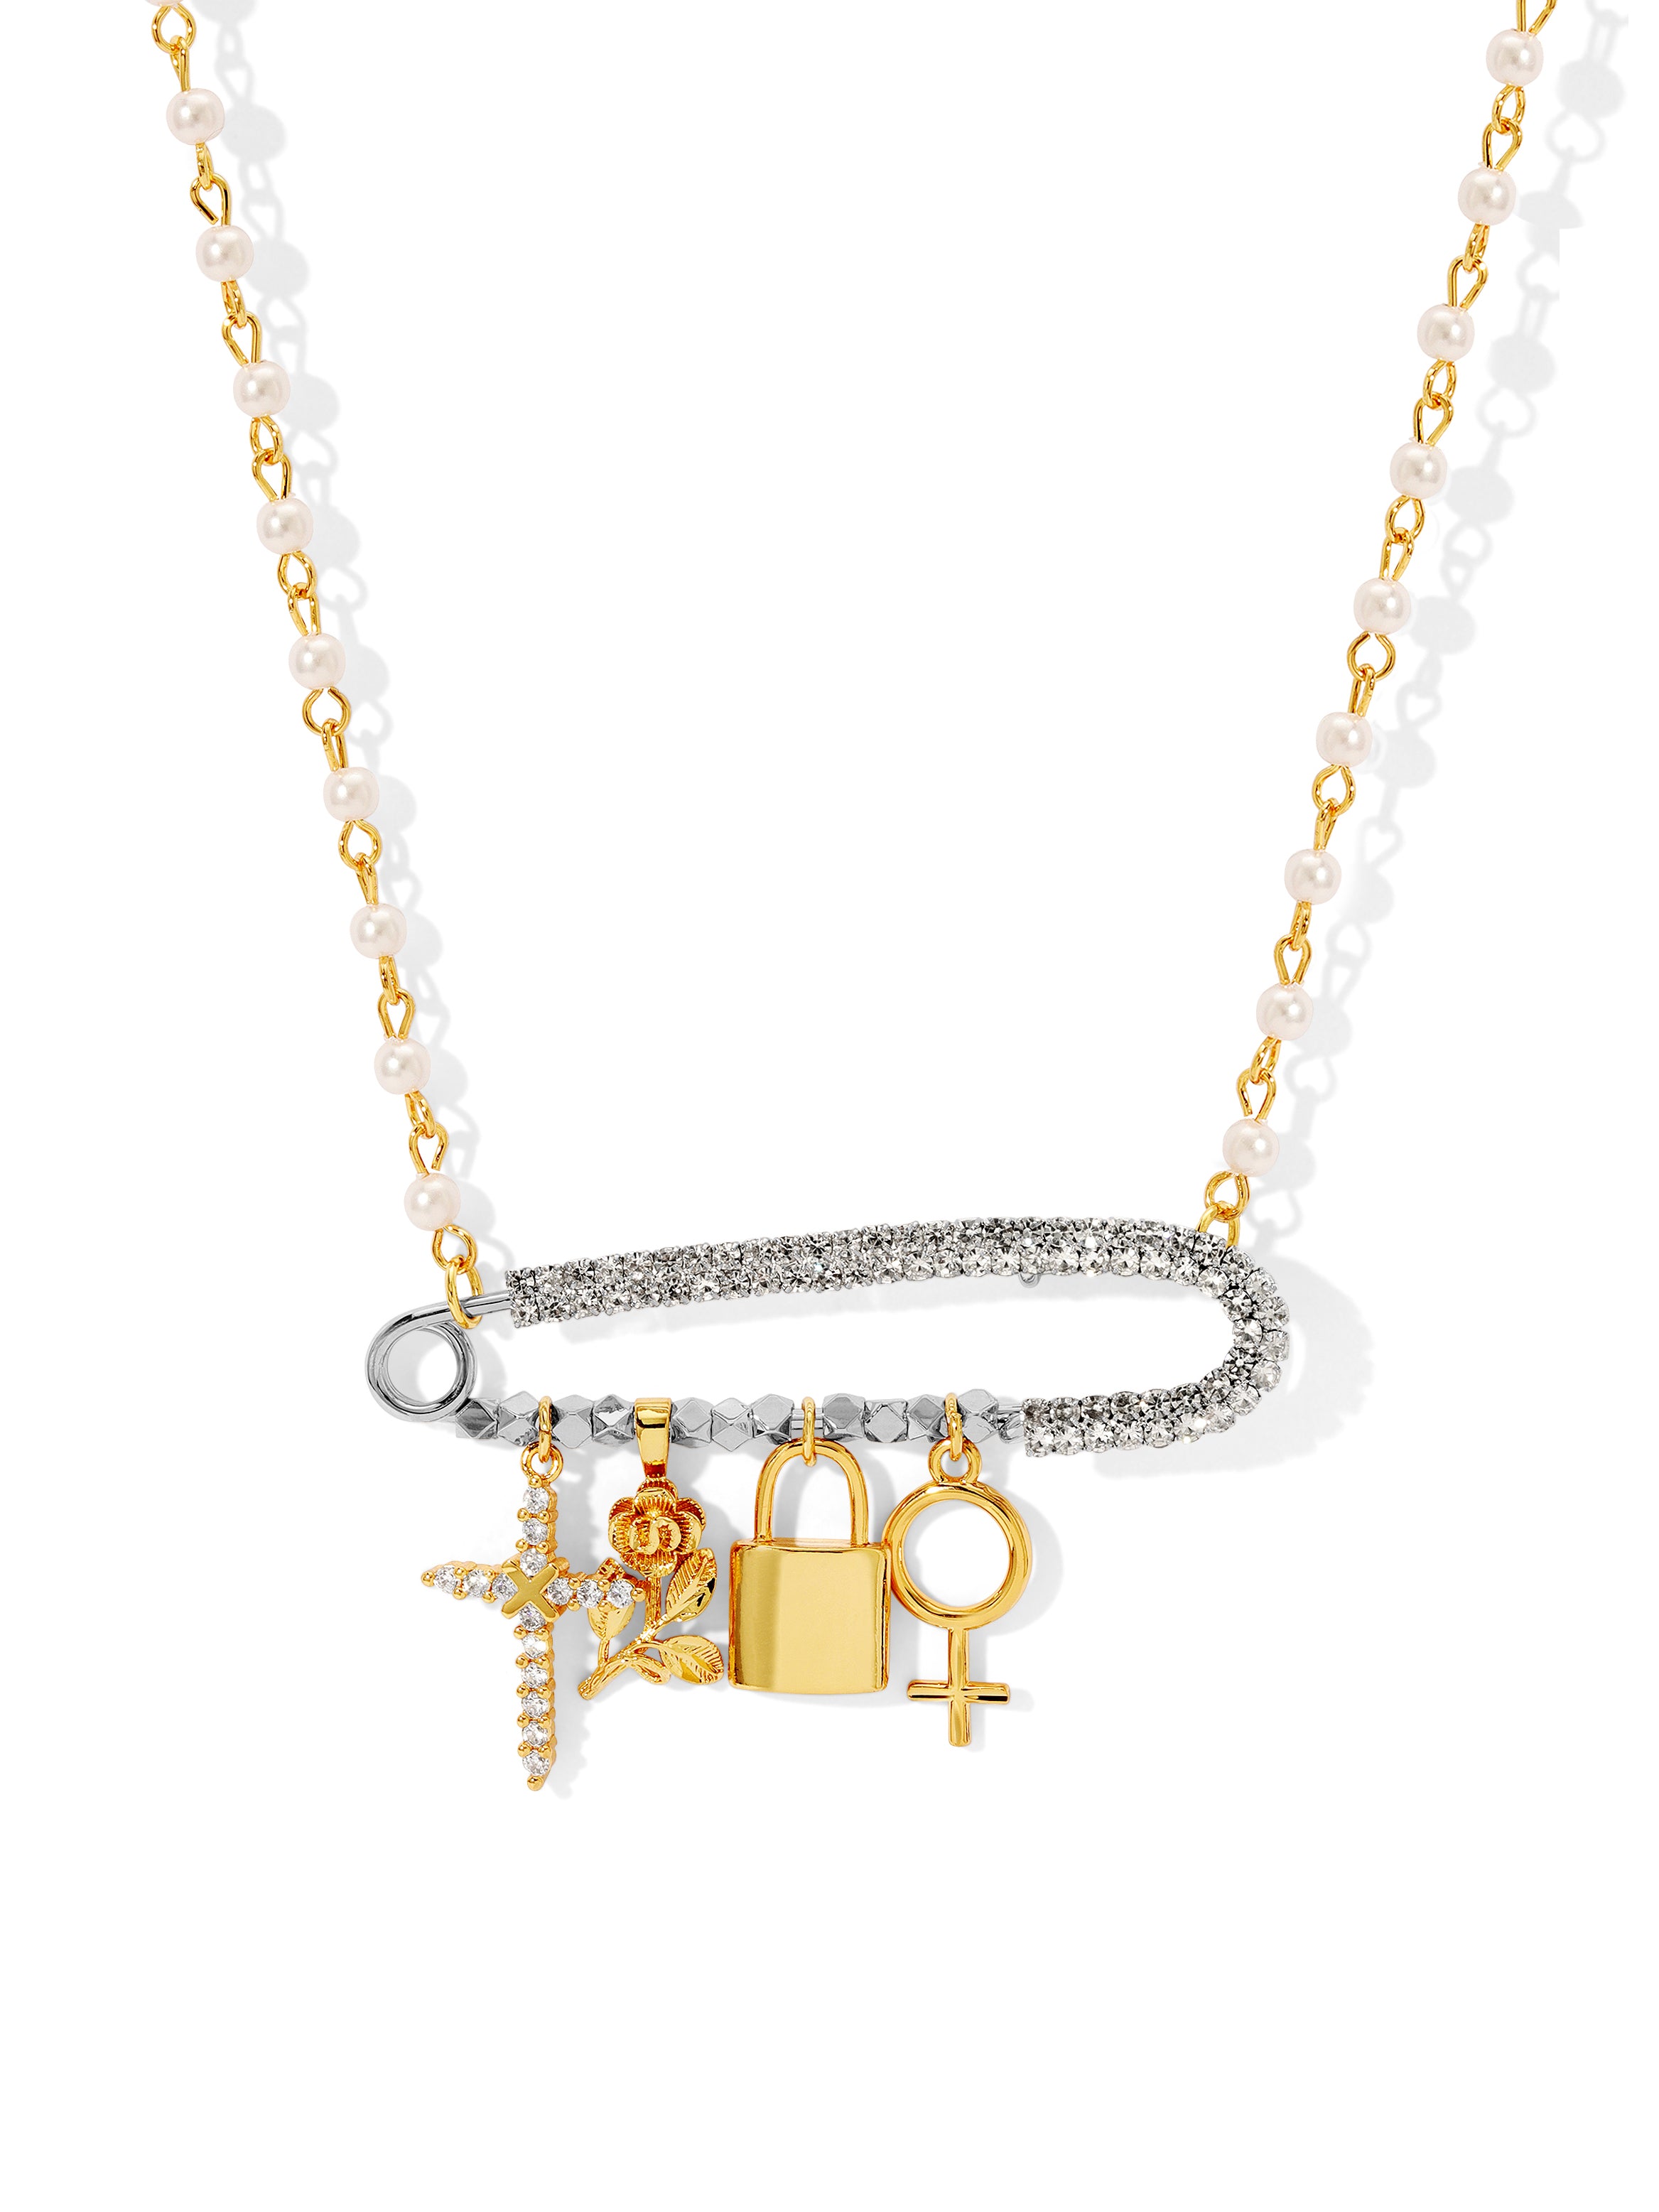 Louis Vuitton Paradise Chain Necklace, Multi, One Size